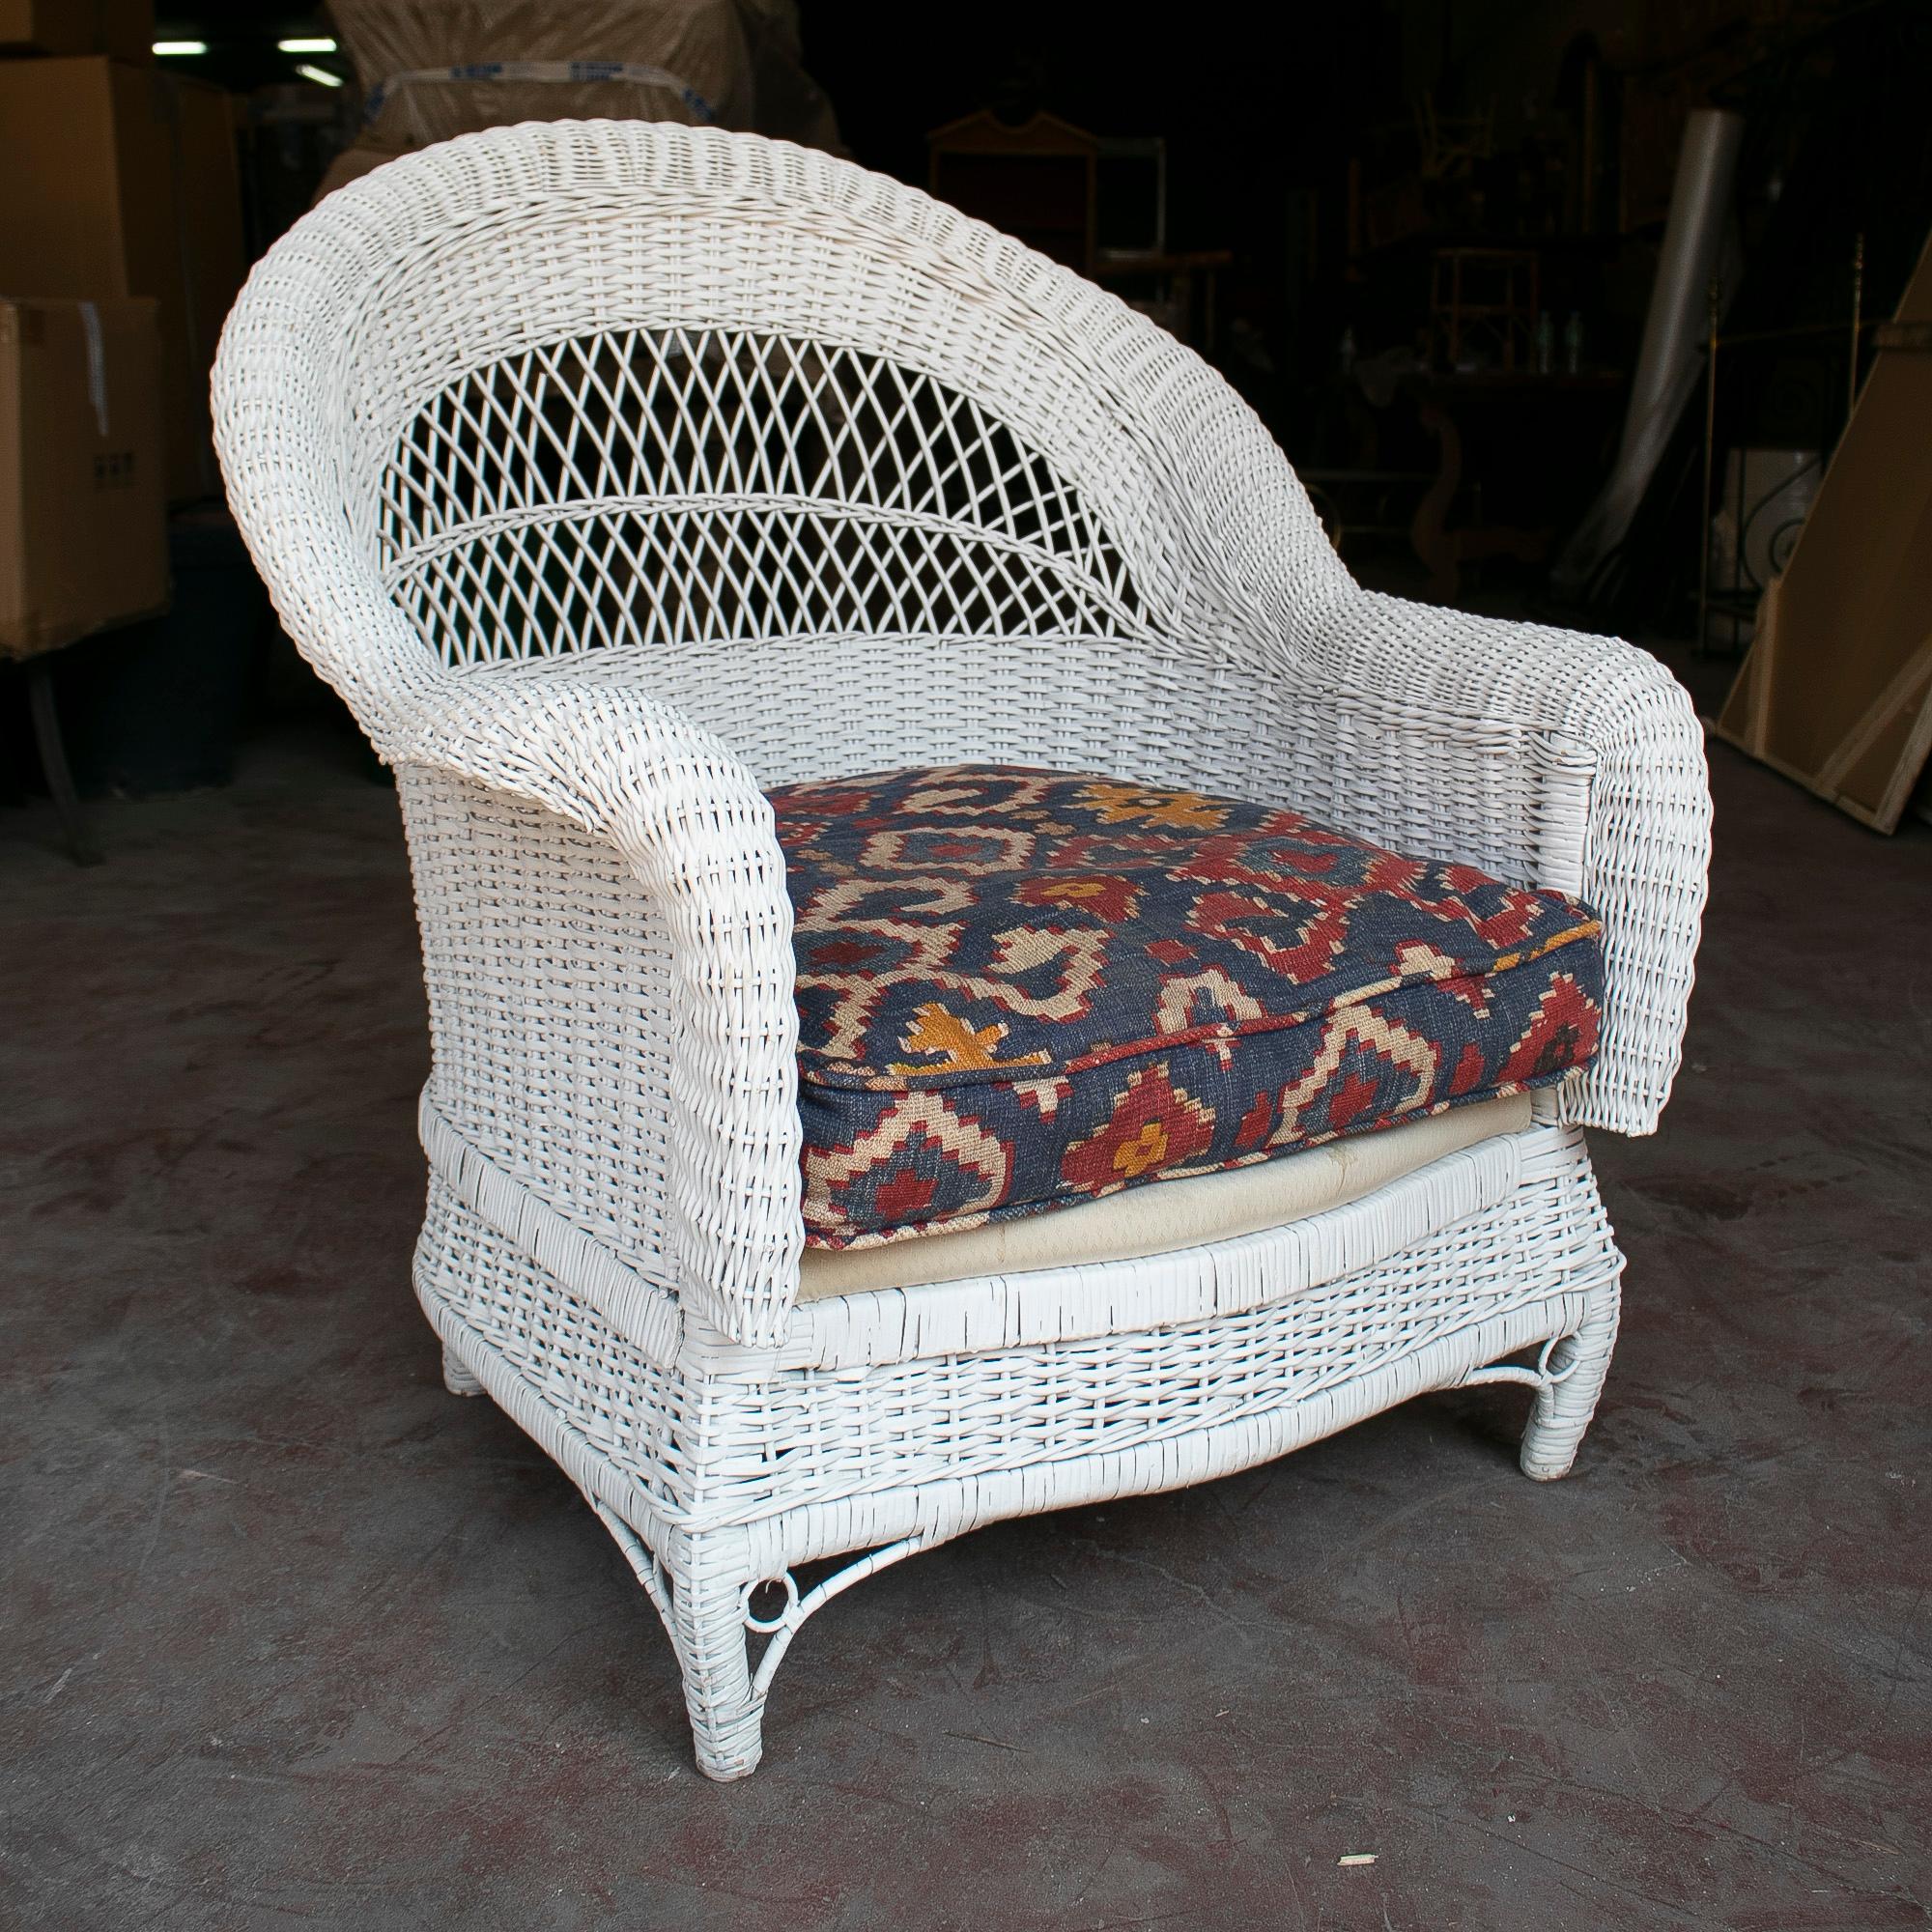 Ensemble de quatre fauteuils vintage espagnols des années 1970 en osier tressé blanc.